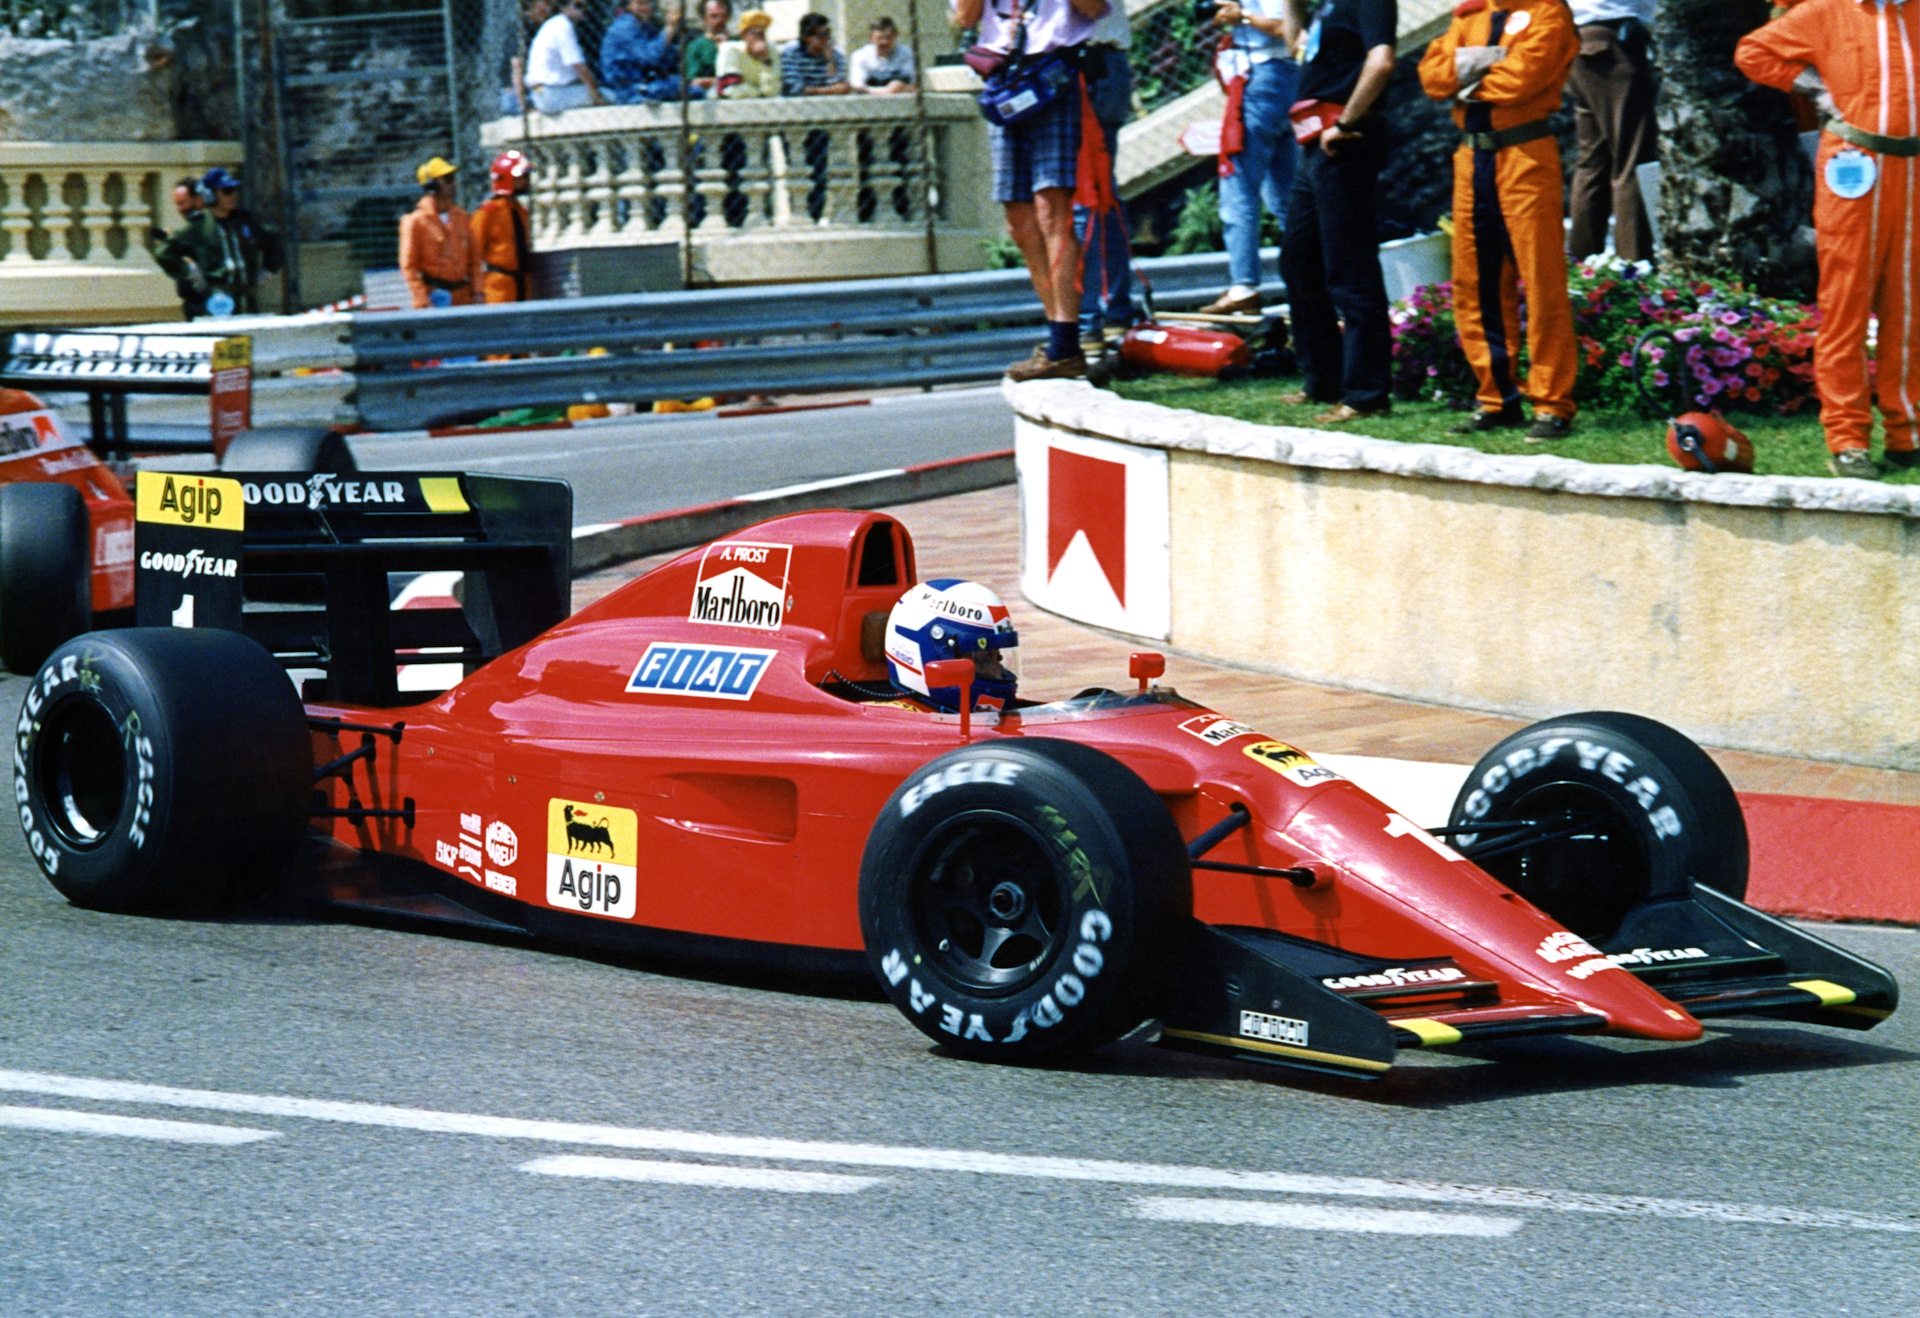 2 641 2023. Ferrari 641 f1. Феррари ф1 1990. Ferrari f1 1990. Alain Prost 1990 Ferrari.